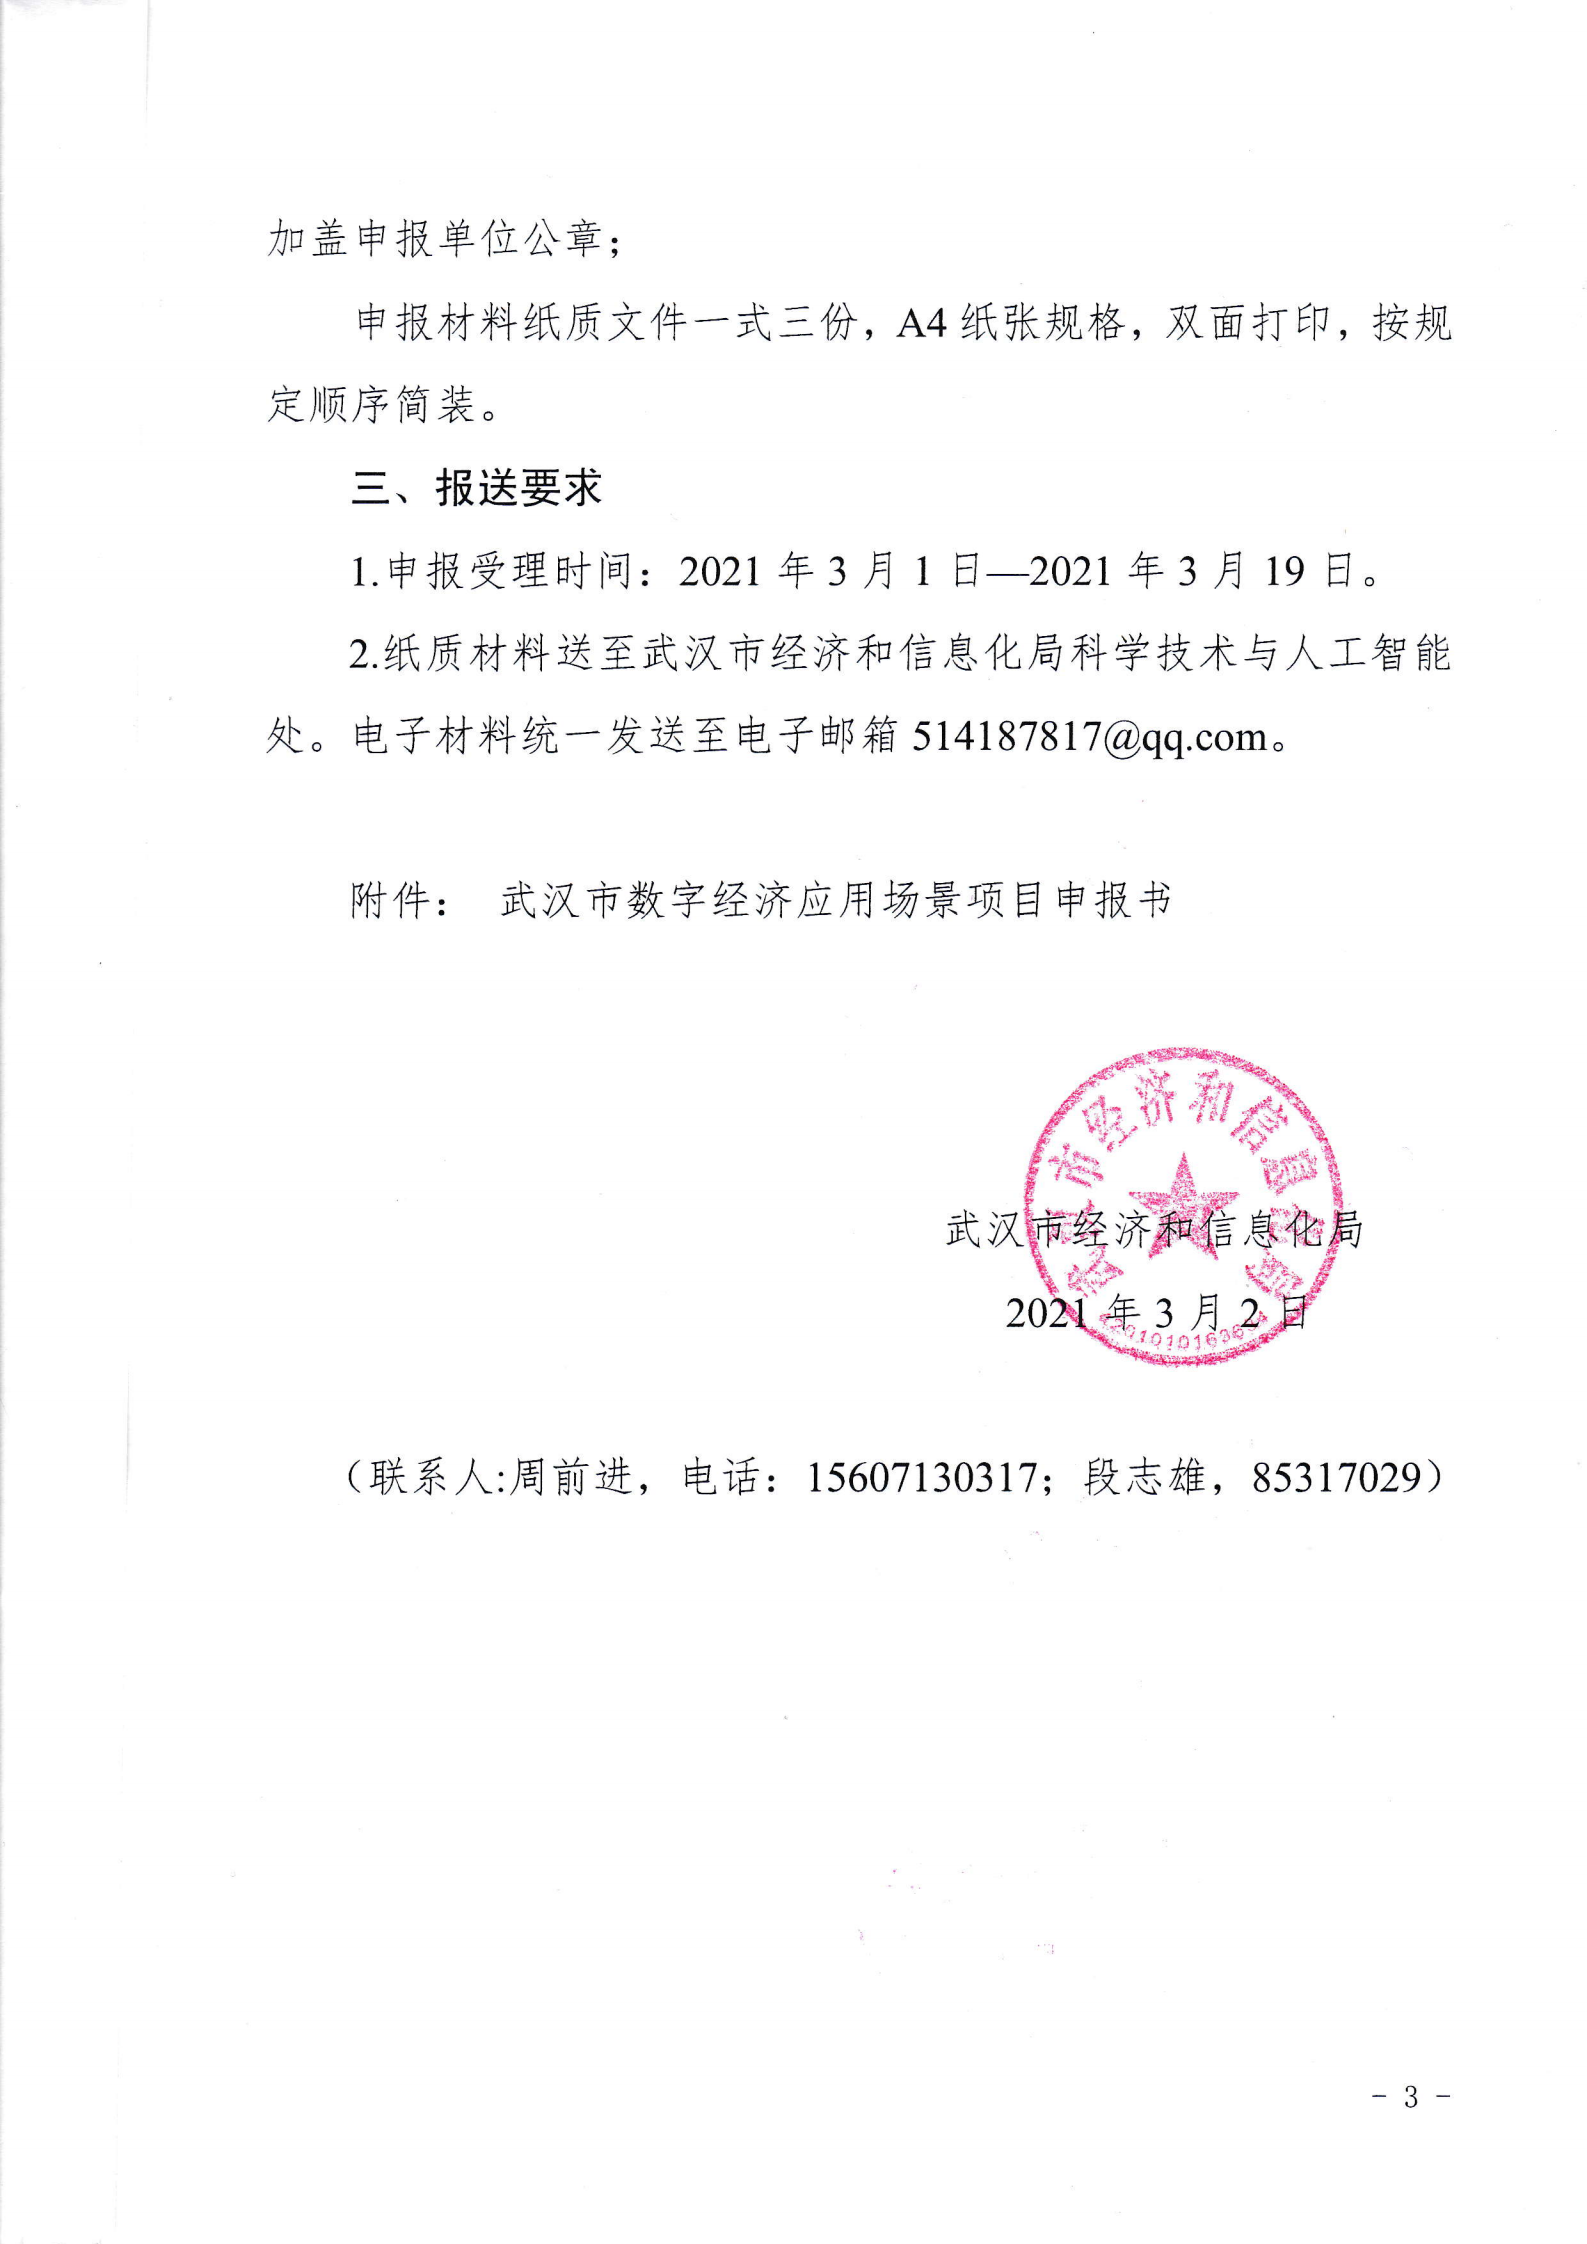 关于组织申报2021年武汉市数字经济应用场景的通知